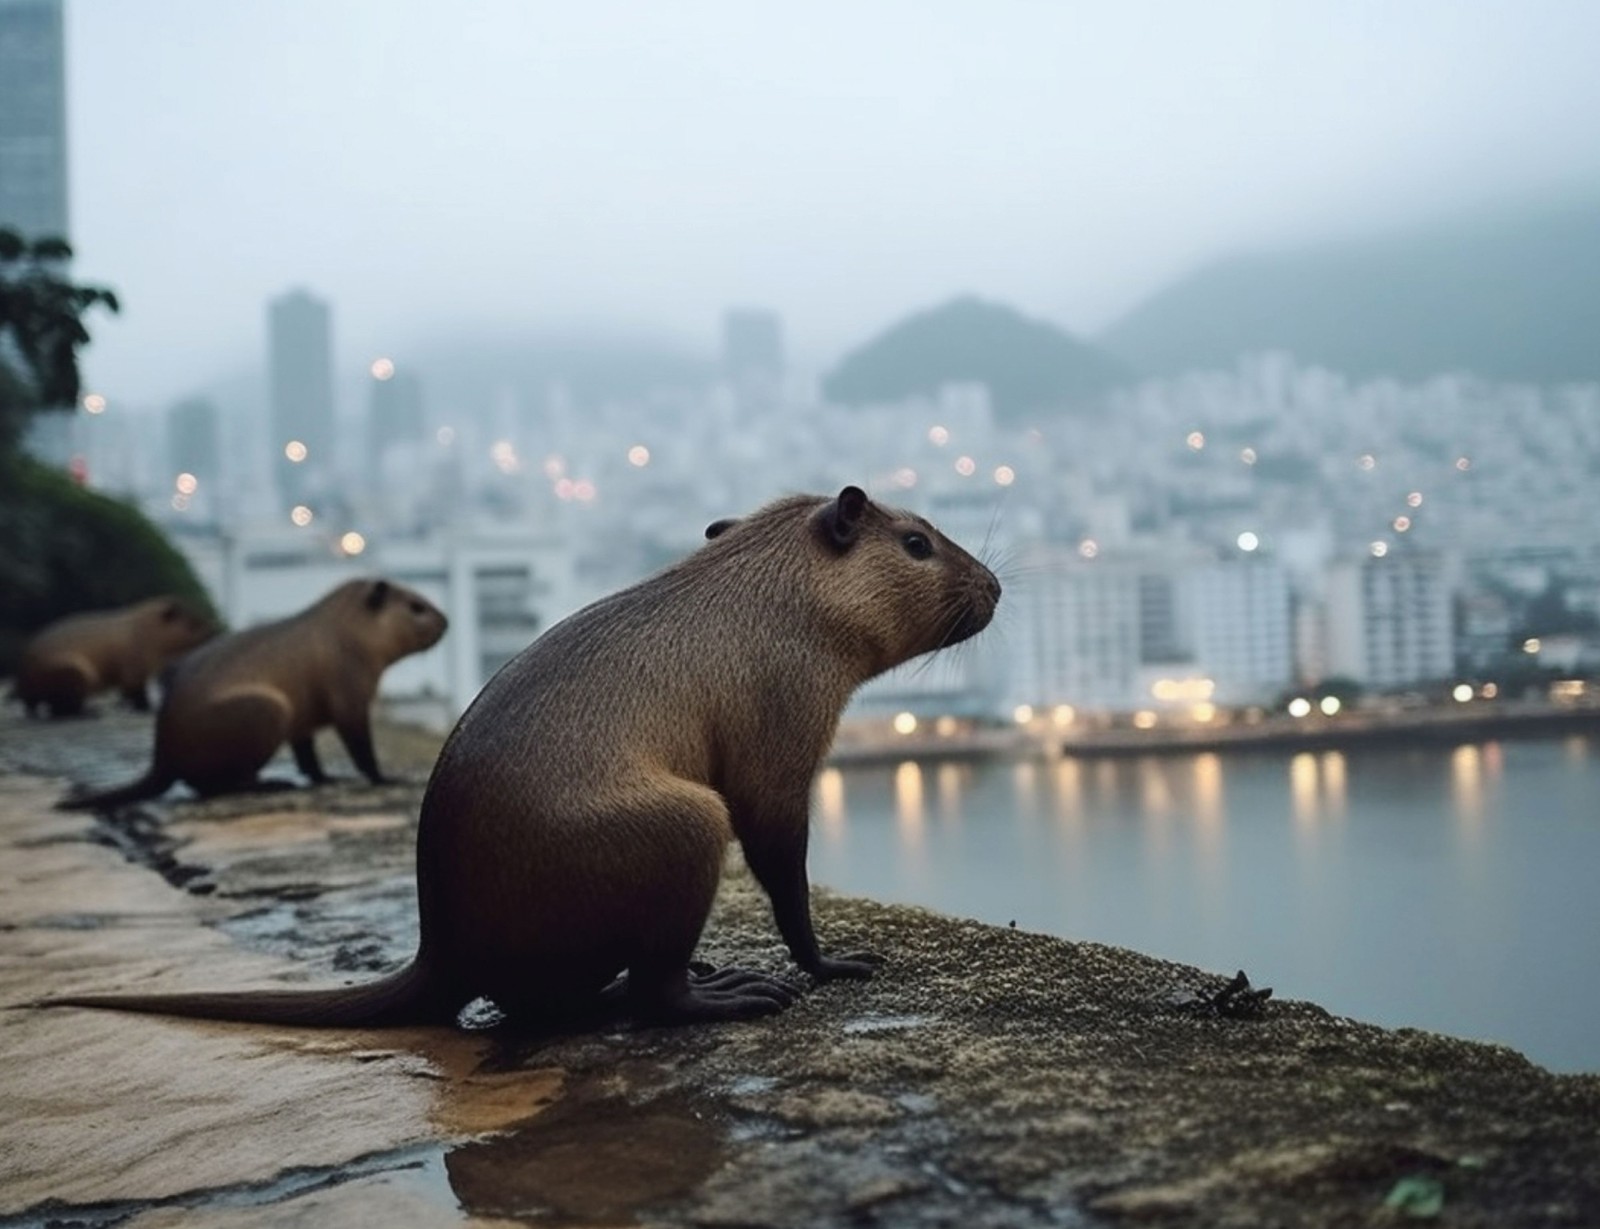 Apreciando a vista. Um grupo de capivaras com a cidade do Rio de Janeiro ao fundo, em um dia de garoa, imagem no estilo de publicações voltadas para a vida animal — Foto: Imagem gerada por IA/Midjourney